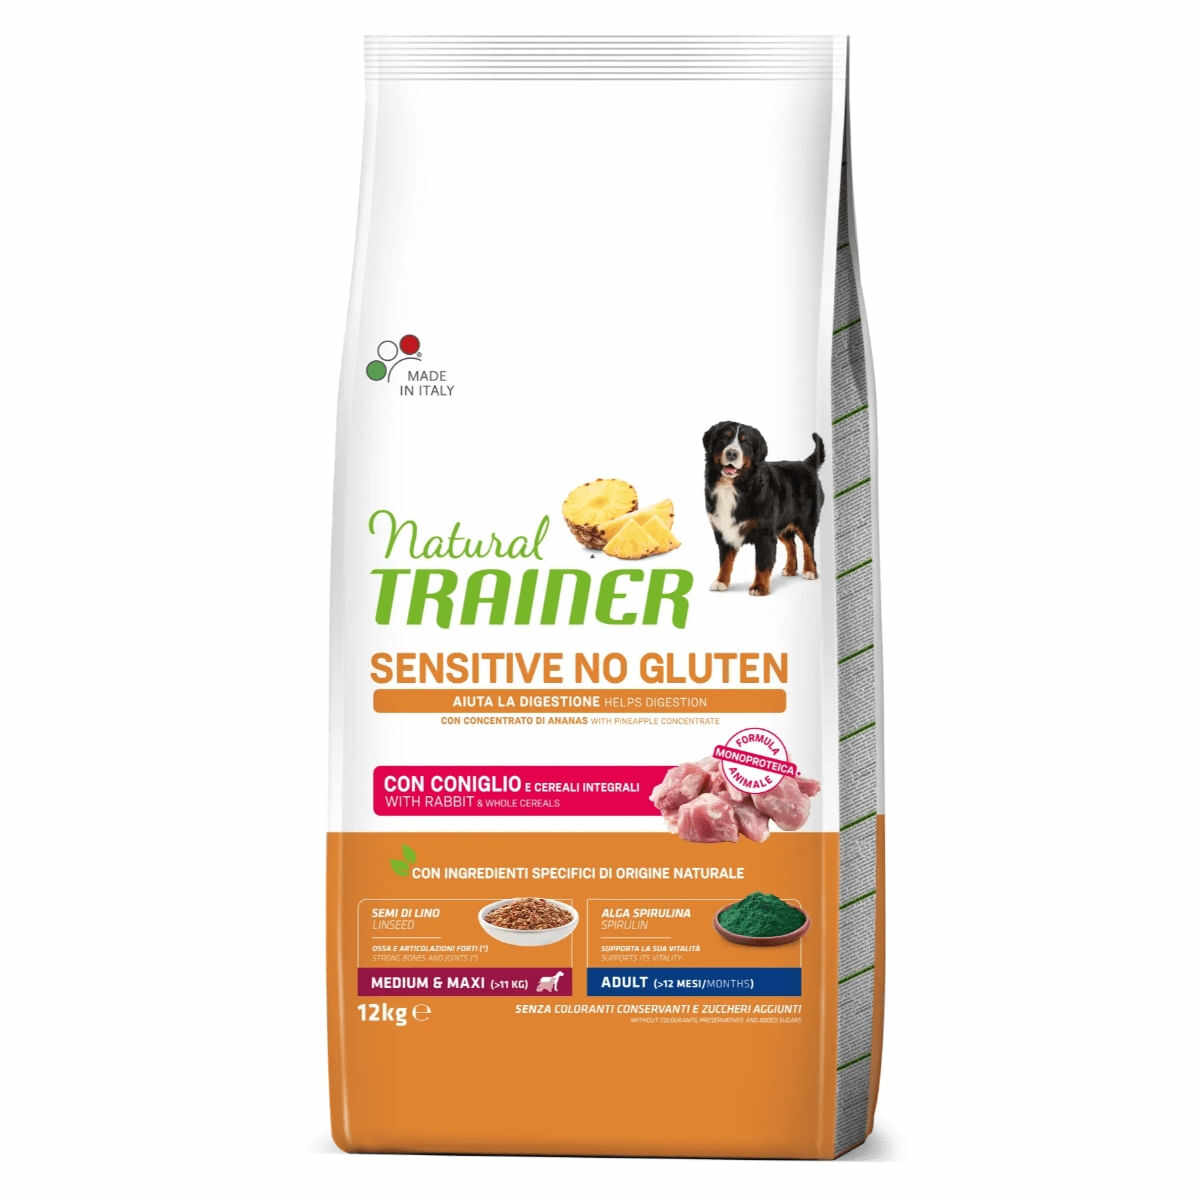 NATURAL TRAINER Sensitive No Gluten, M-XL, Iepure, hrană uscată monoproteică câini, sistem digestiv, 12kg